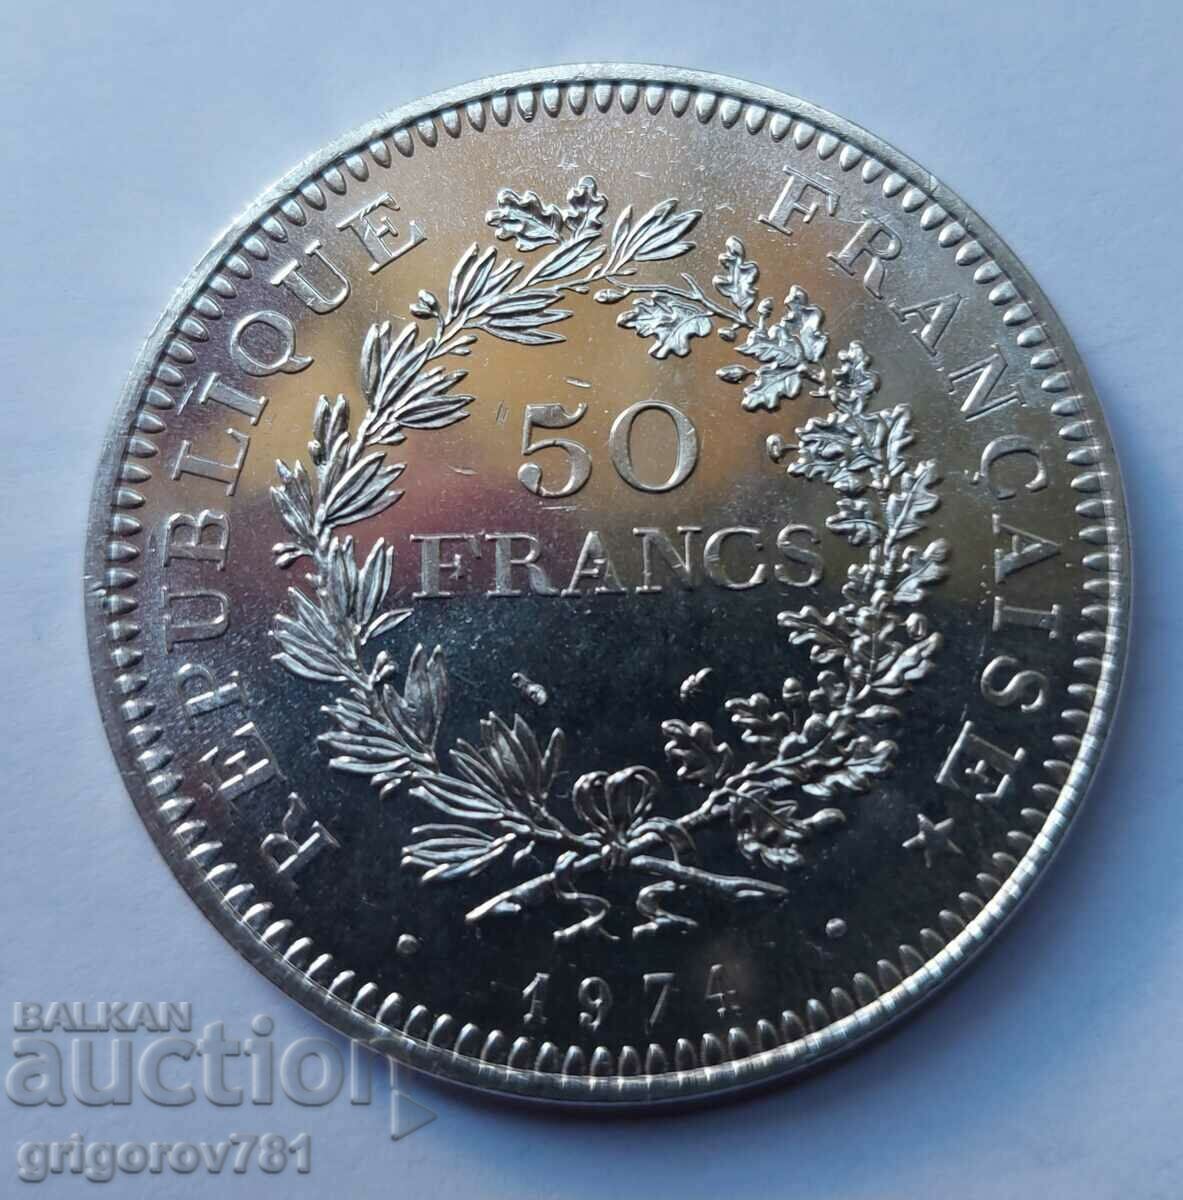 Ασήμι 50 φράγκων Γαλλία 1974 - Ασημένιο νόμισμα #31